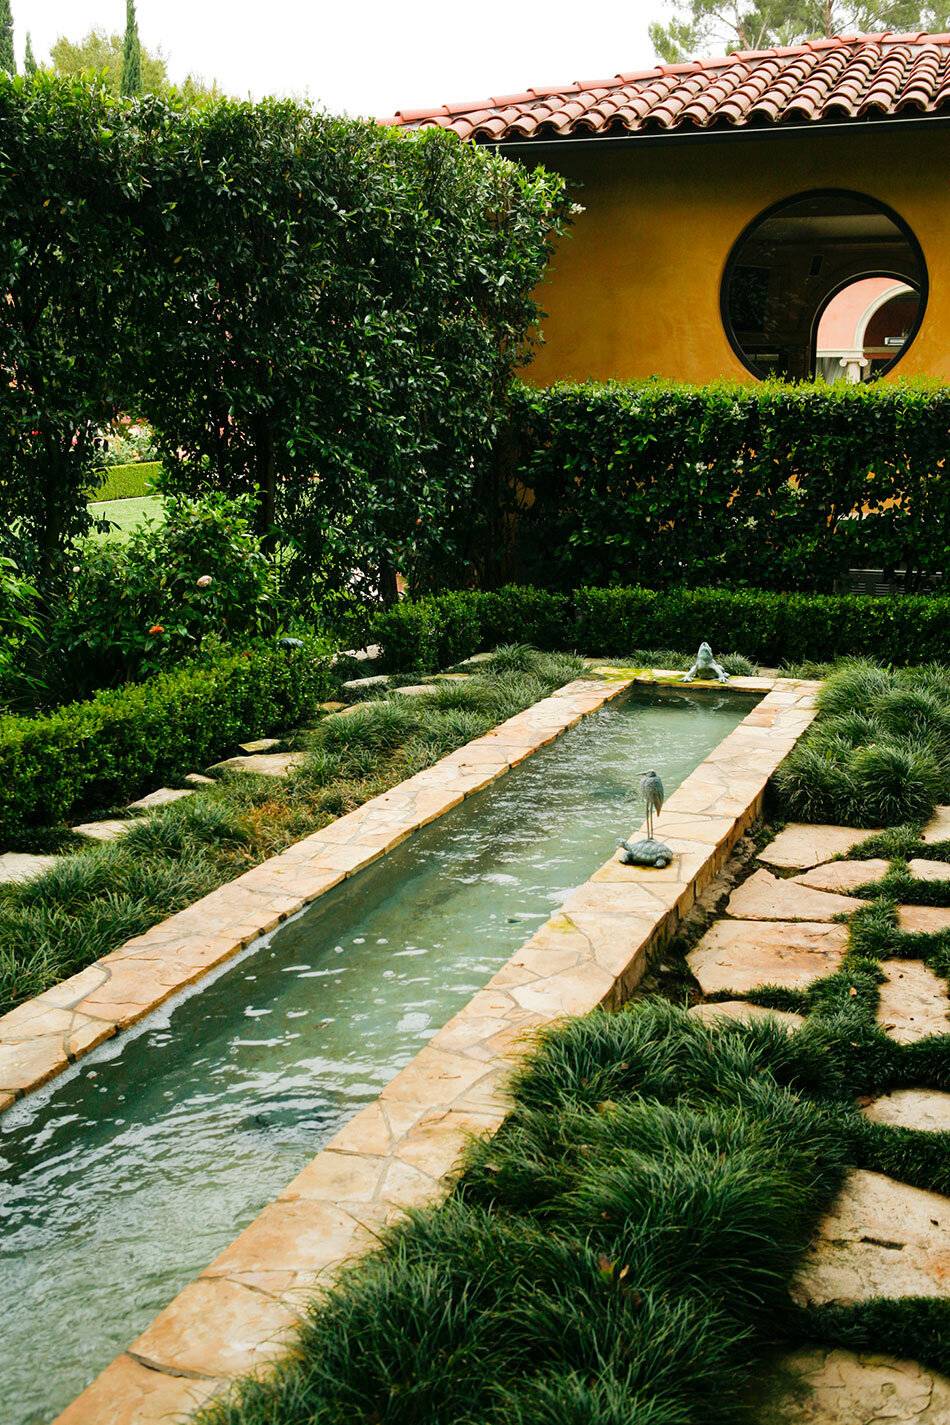 The Italian Garden